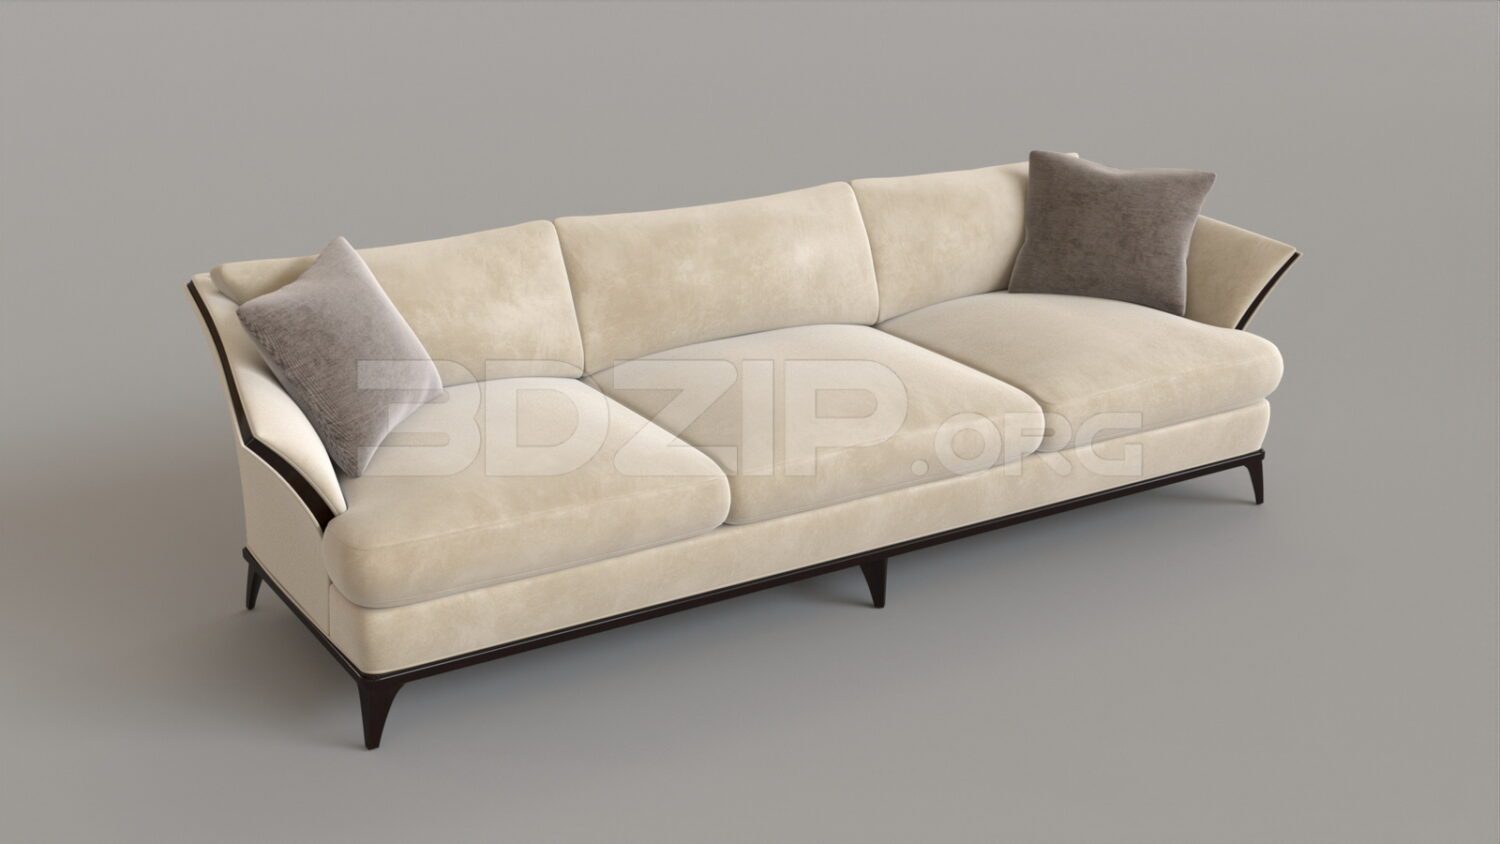 4731. Free 3D Sofa Model Download